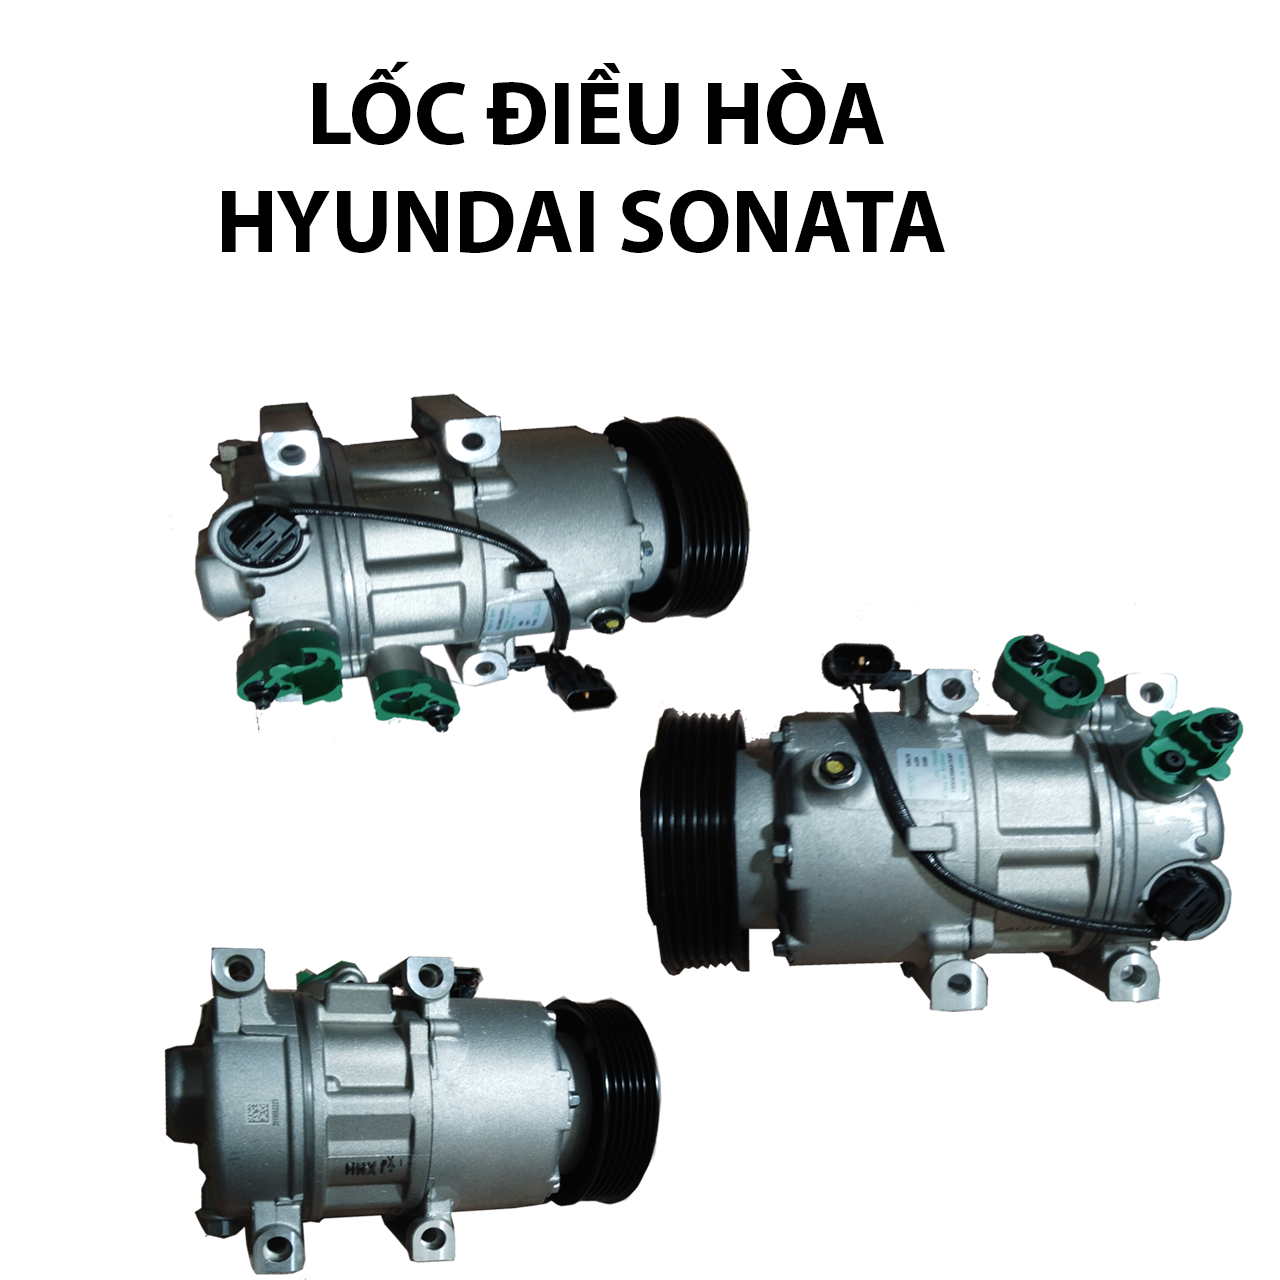 Lốc điều hòa Hyundai Sonata 2010 Hàn Quốc hỗ trợ thay thế lắp đặt tại Hà